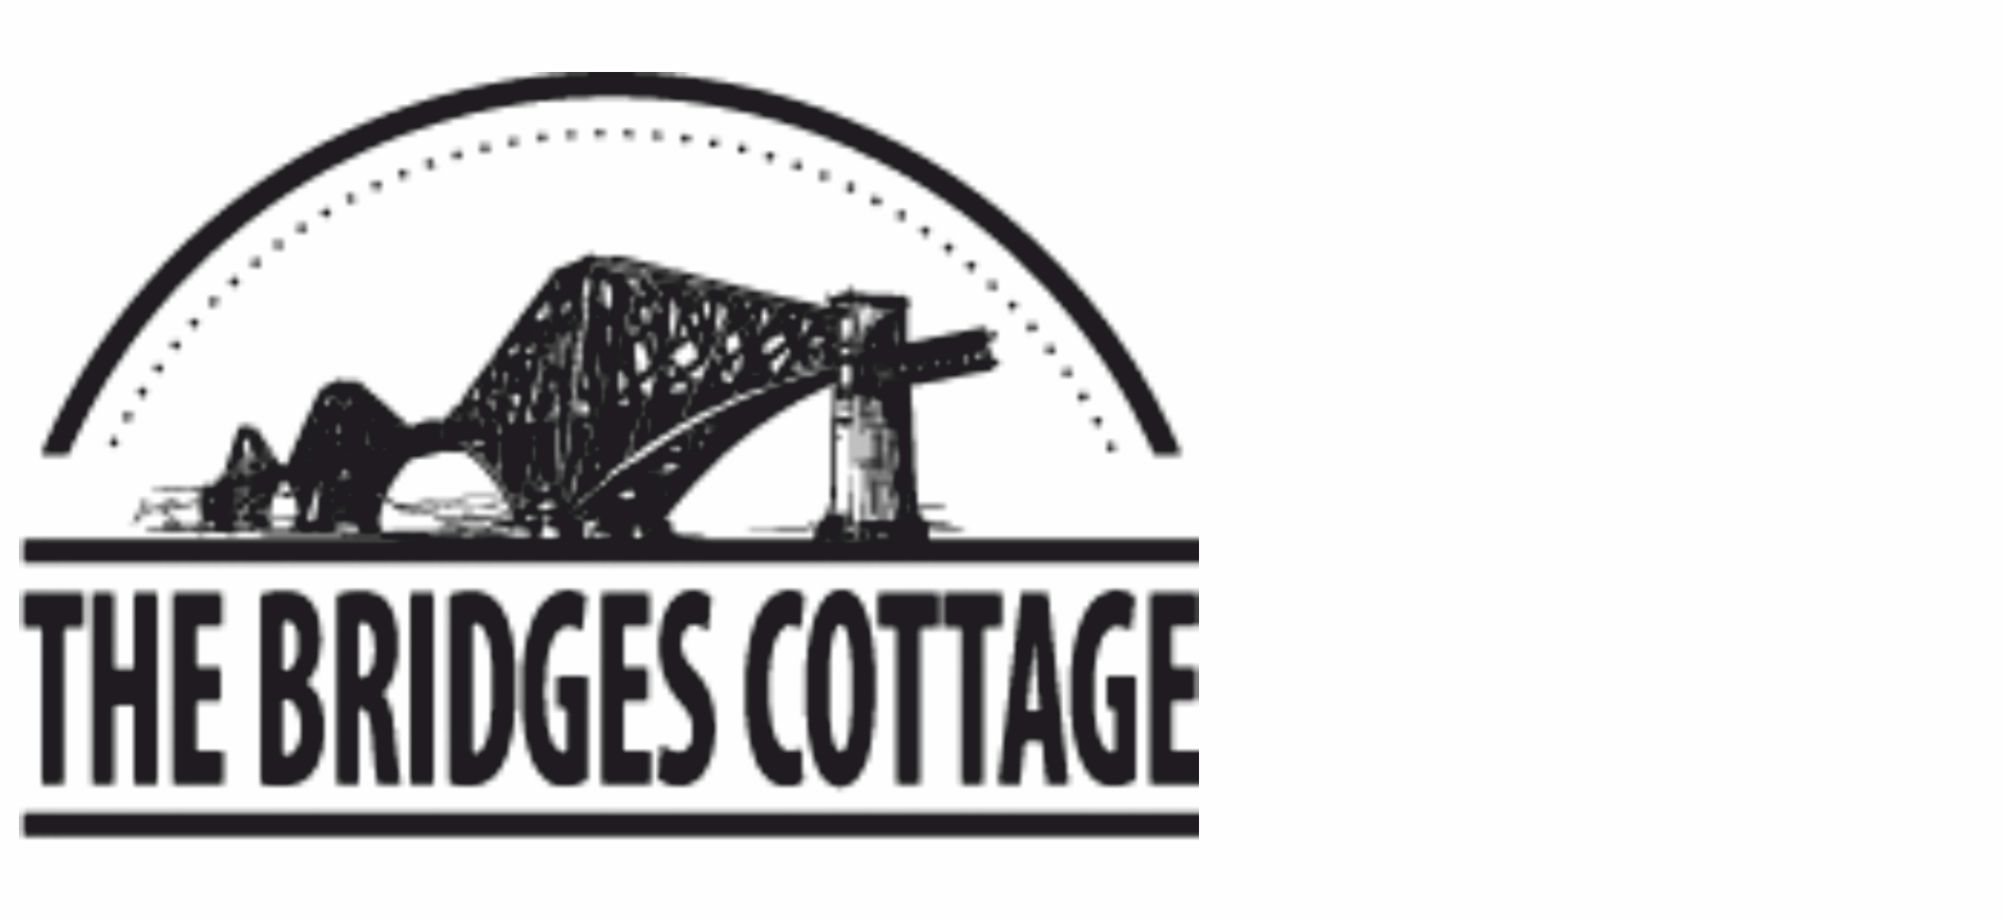 Bridges Cottage